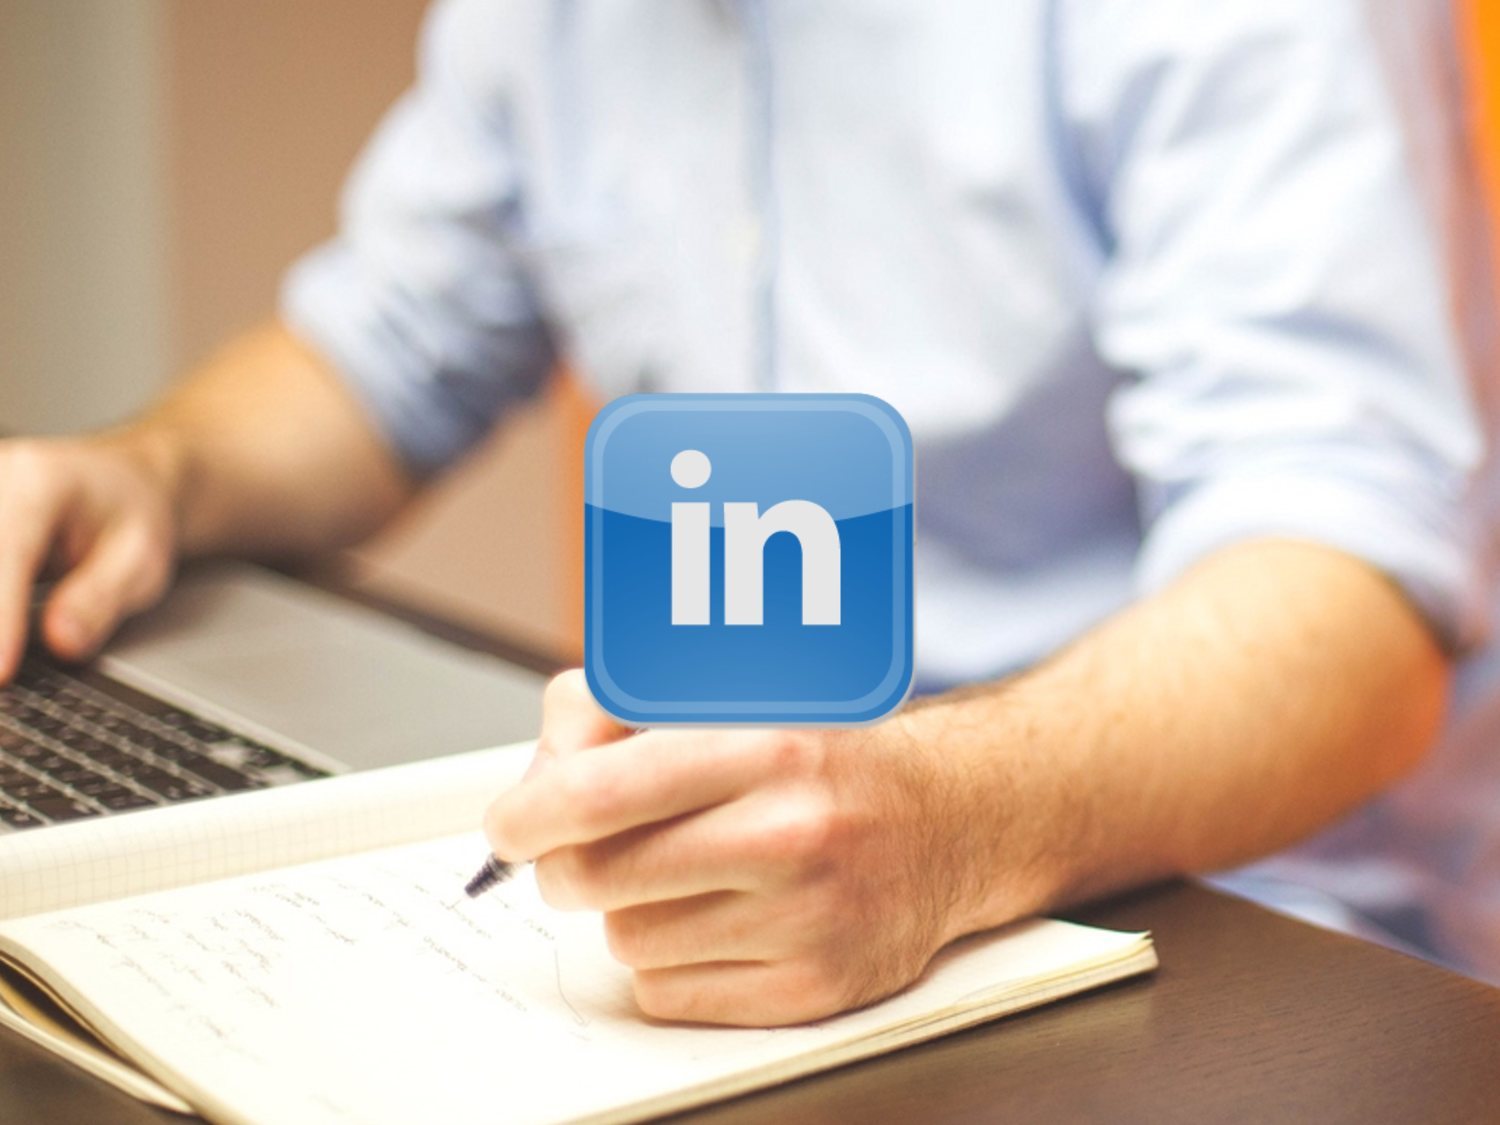 4 consejos para encontrar trabajo a través de LinkedIn